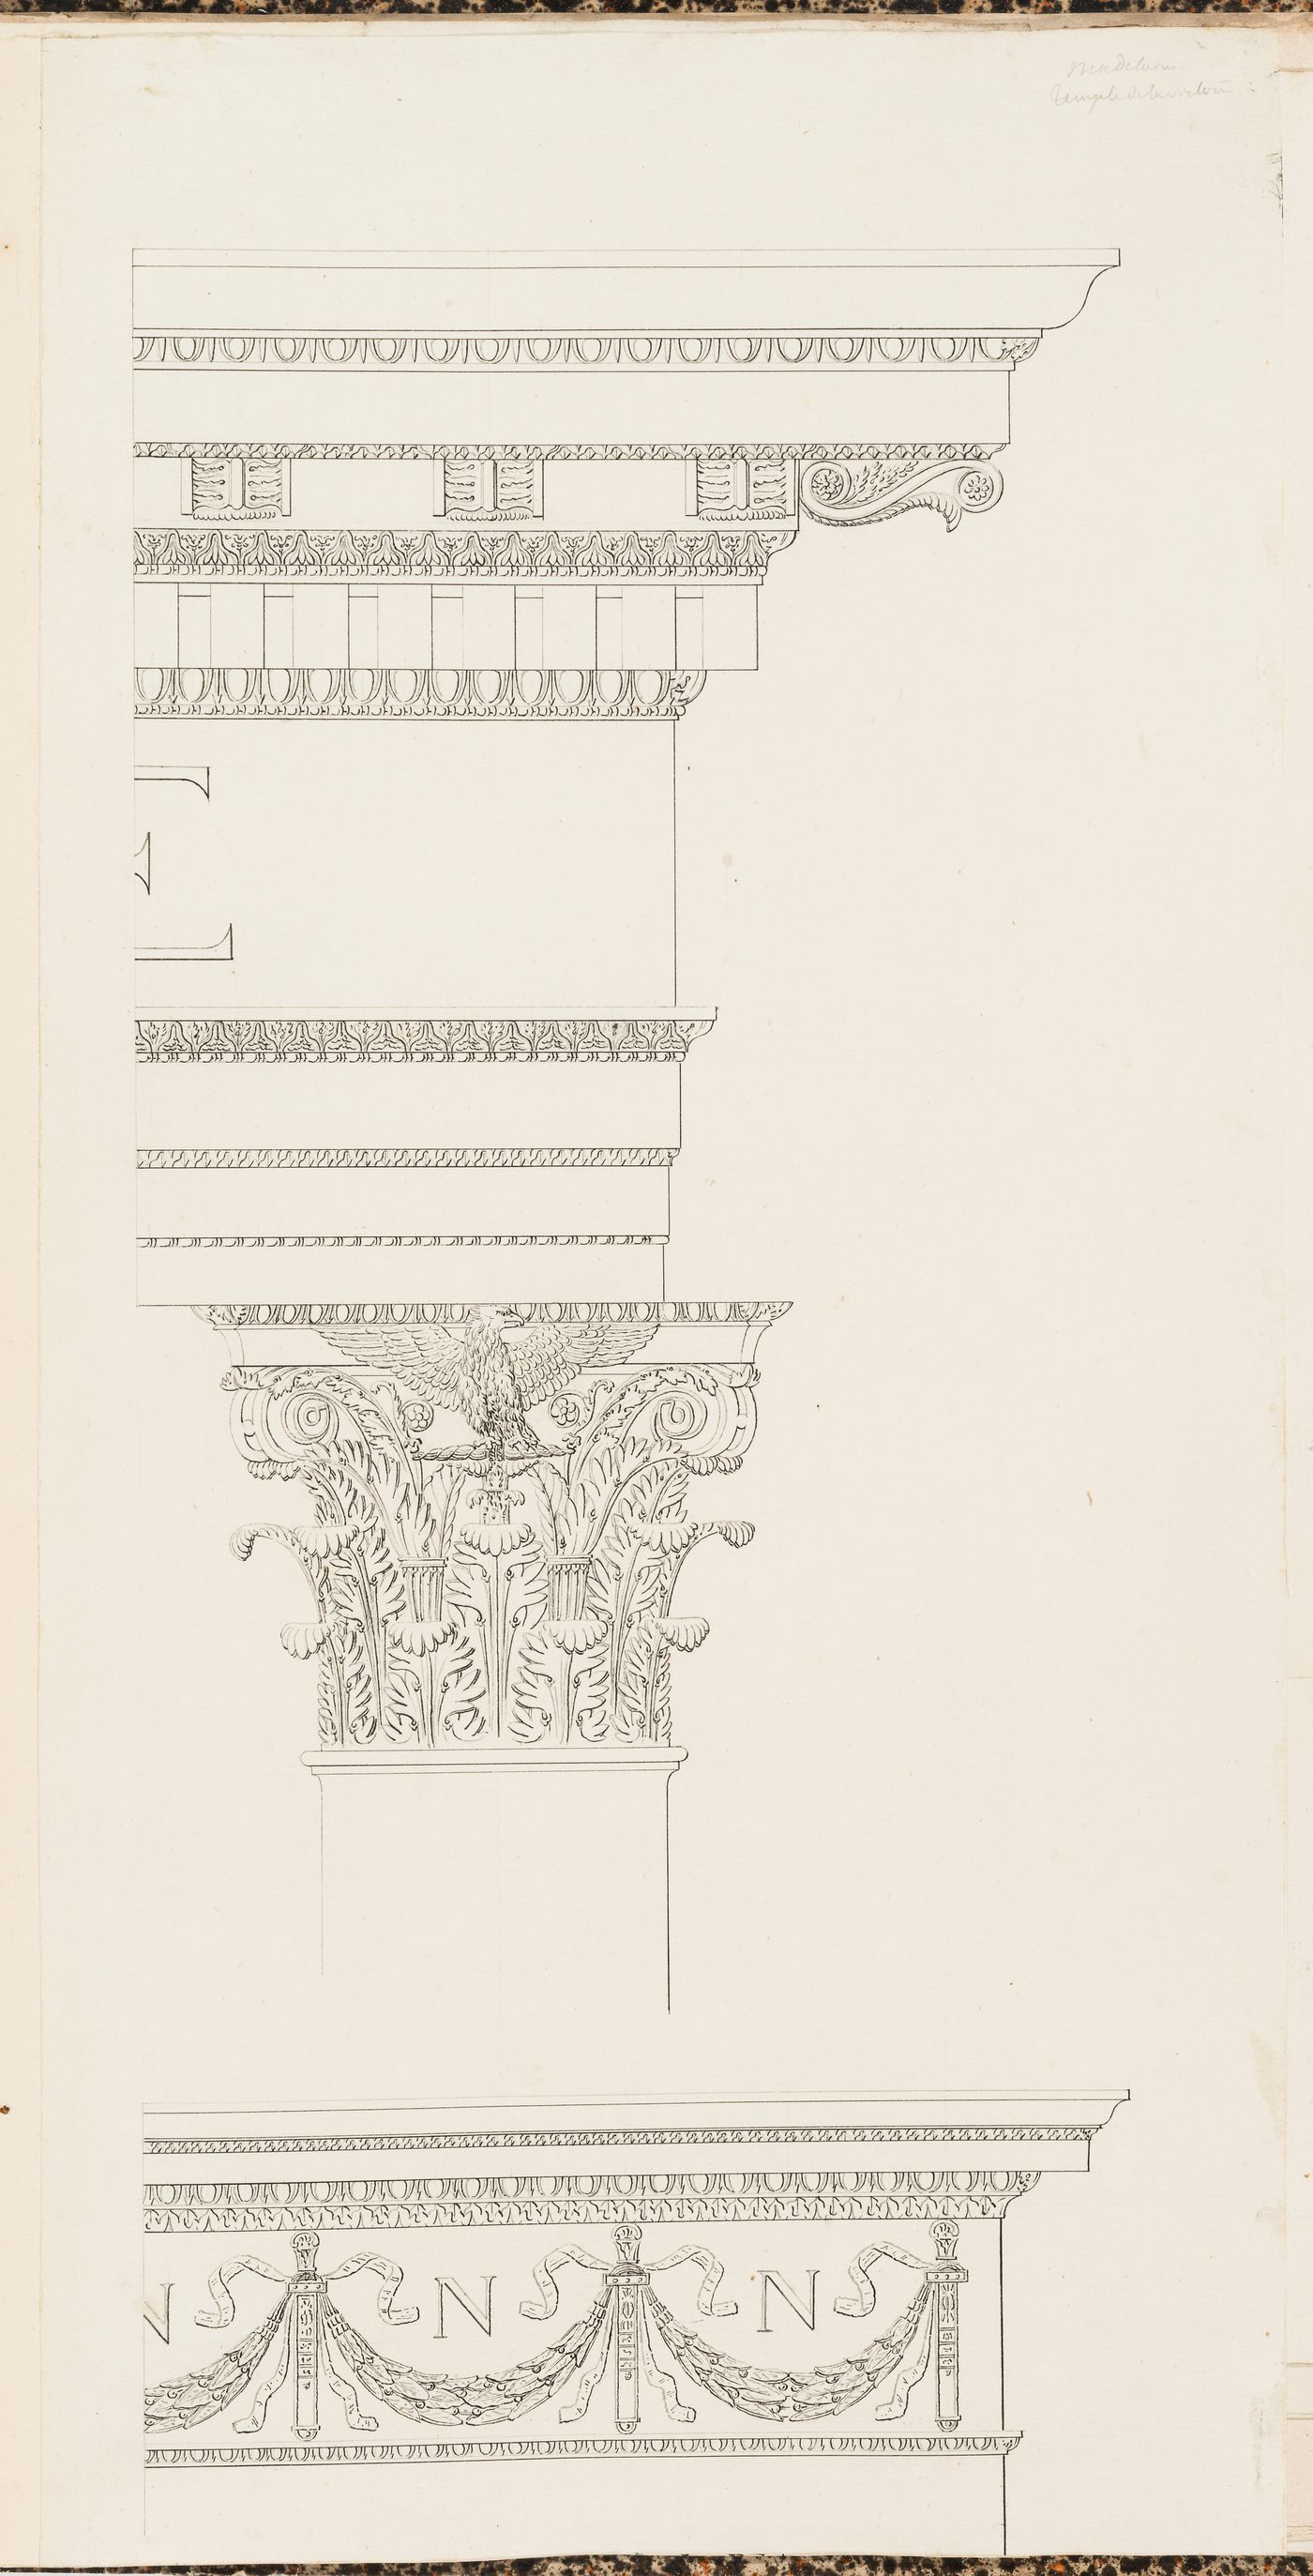 Project for the conversion of the Église de la Madeleine into a Temple de la Gloire, Paris: Elevation of an entabulature, capital and frieze